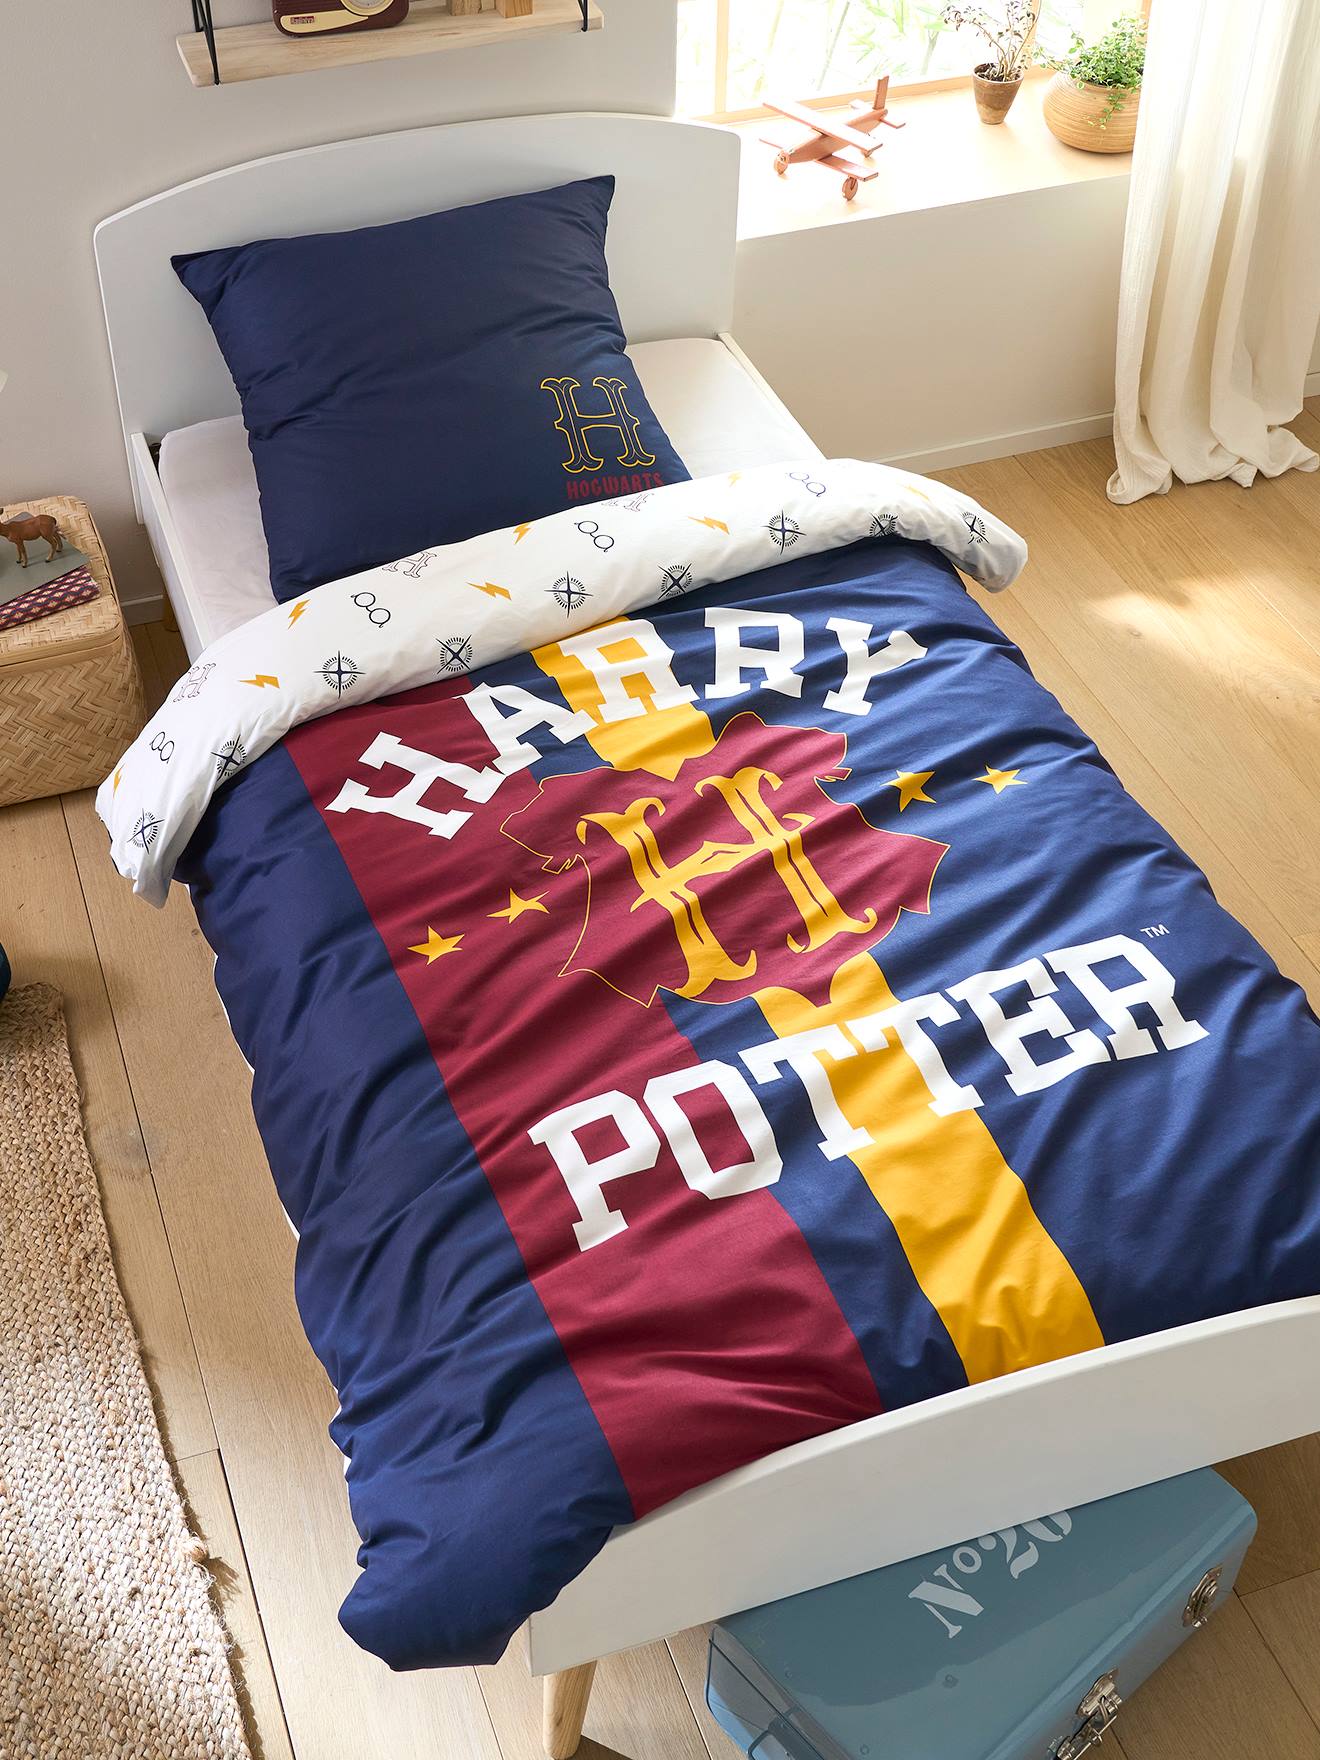 Harry Potter(r) Duvet Cover + Pillowcase Set for Children